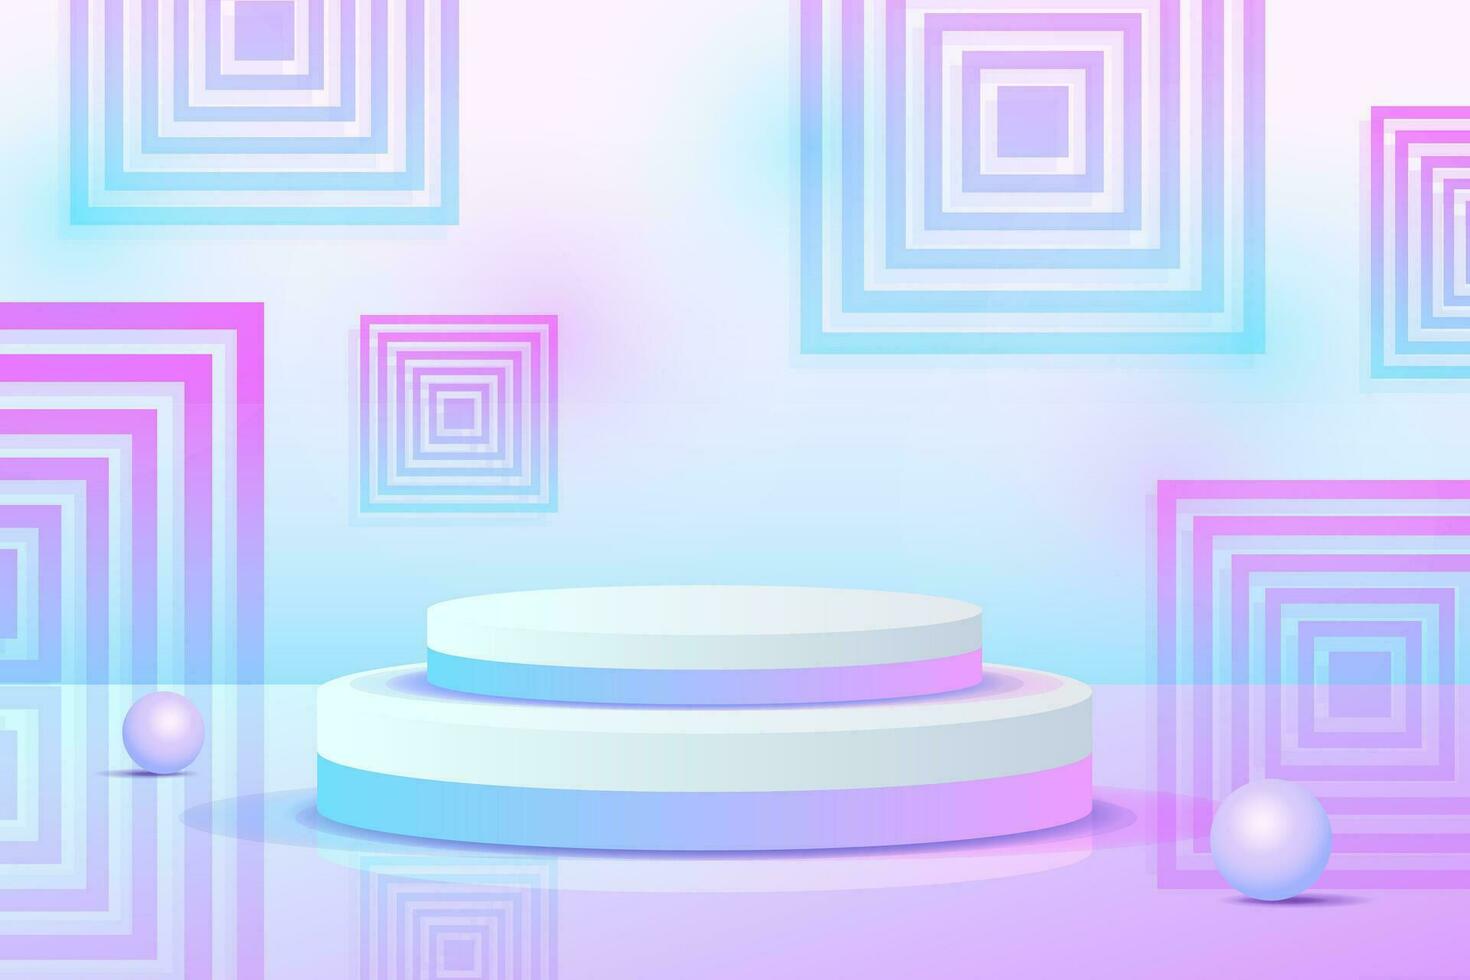 conjunto roxo azul violeta objeto 3d cilindro pedestal pódio exibição gradiente cor cena mínima vetor